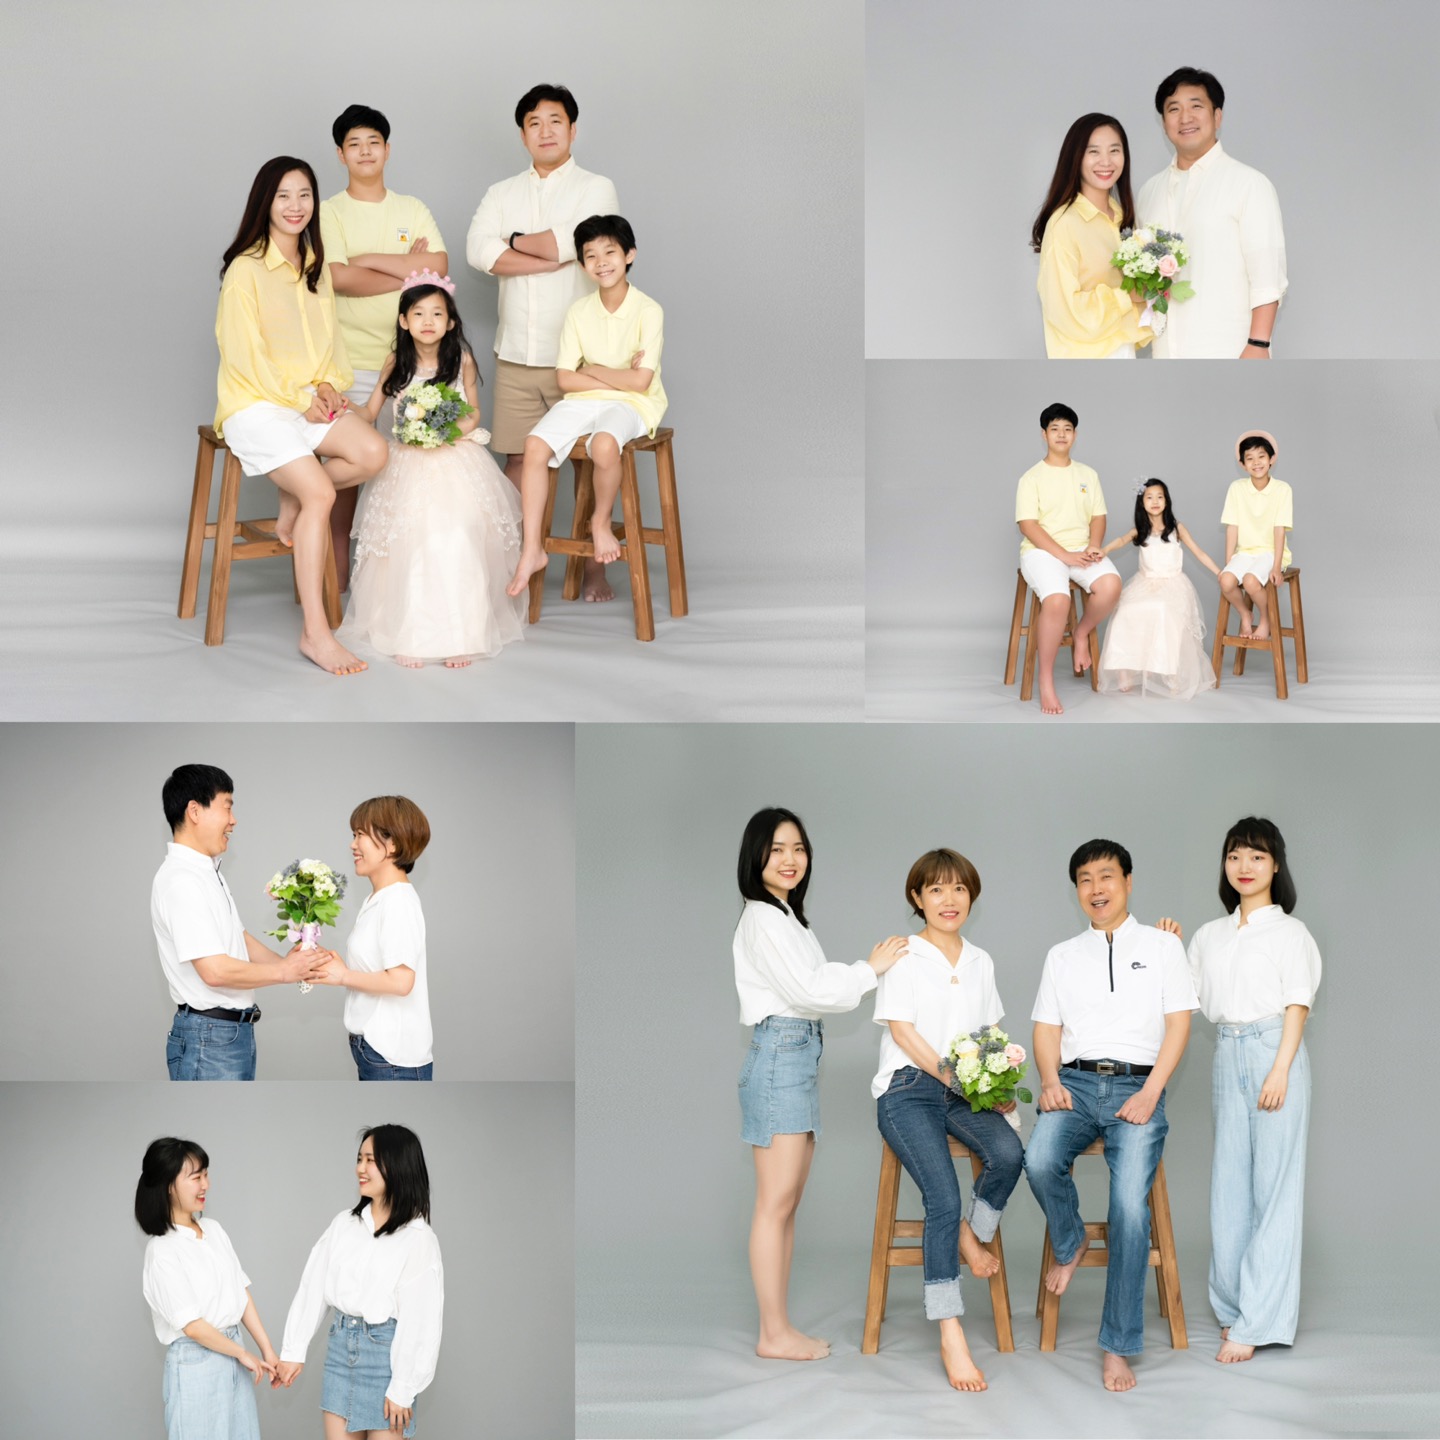 송파여성문화회관에서 진행한 행복한 컷 담아Dream에 선정된 2가족이 가족사진을 찍은 모습이다.